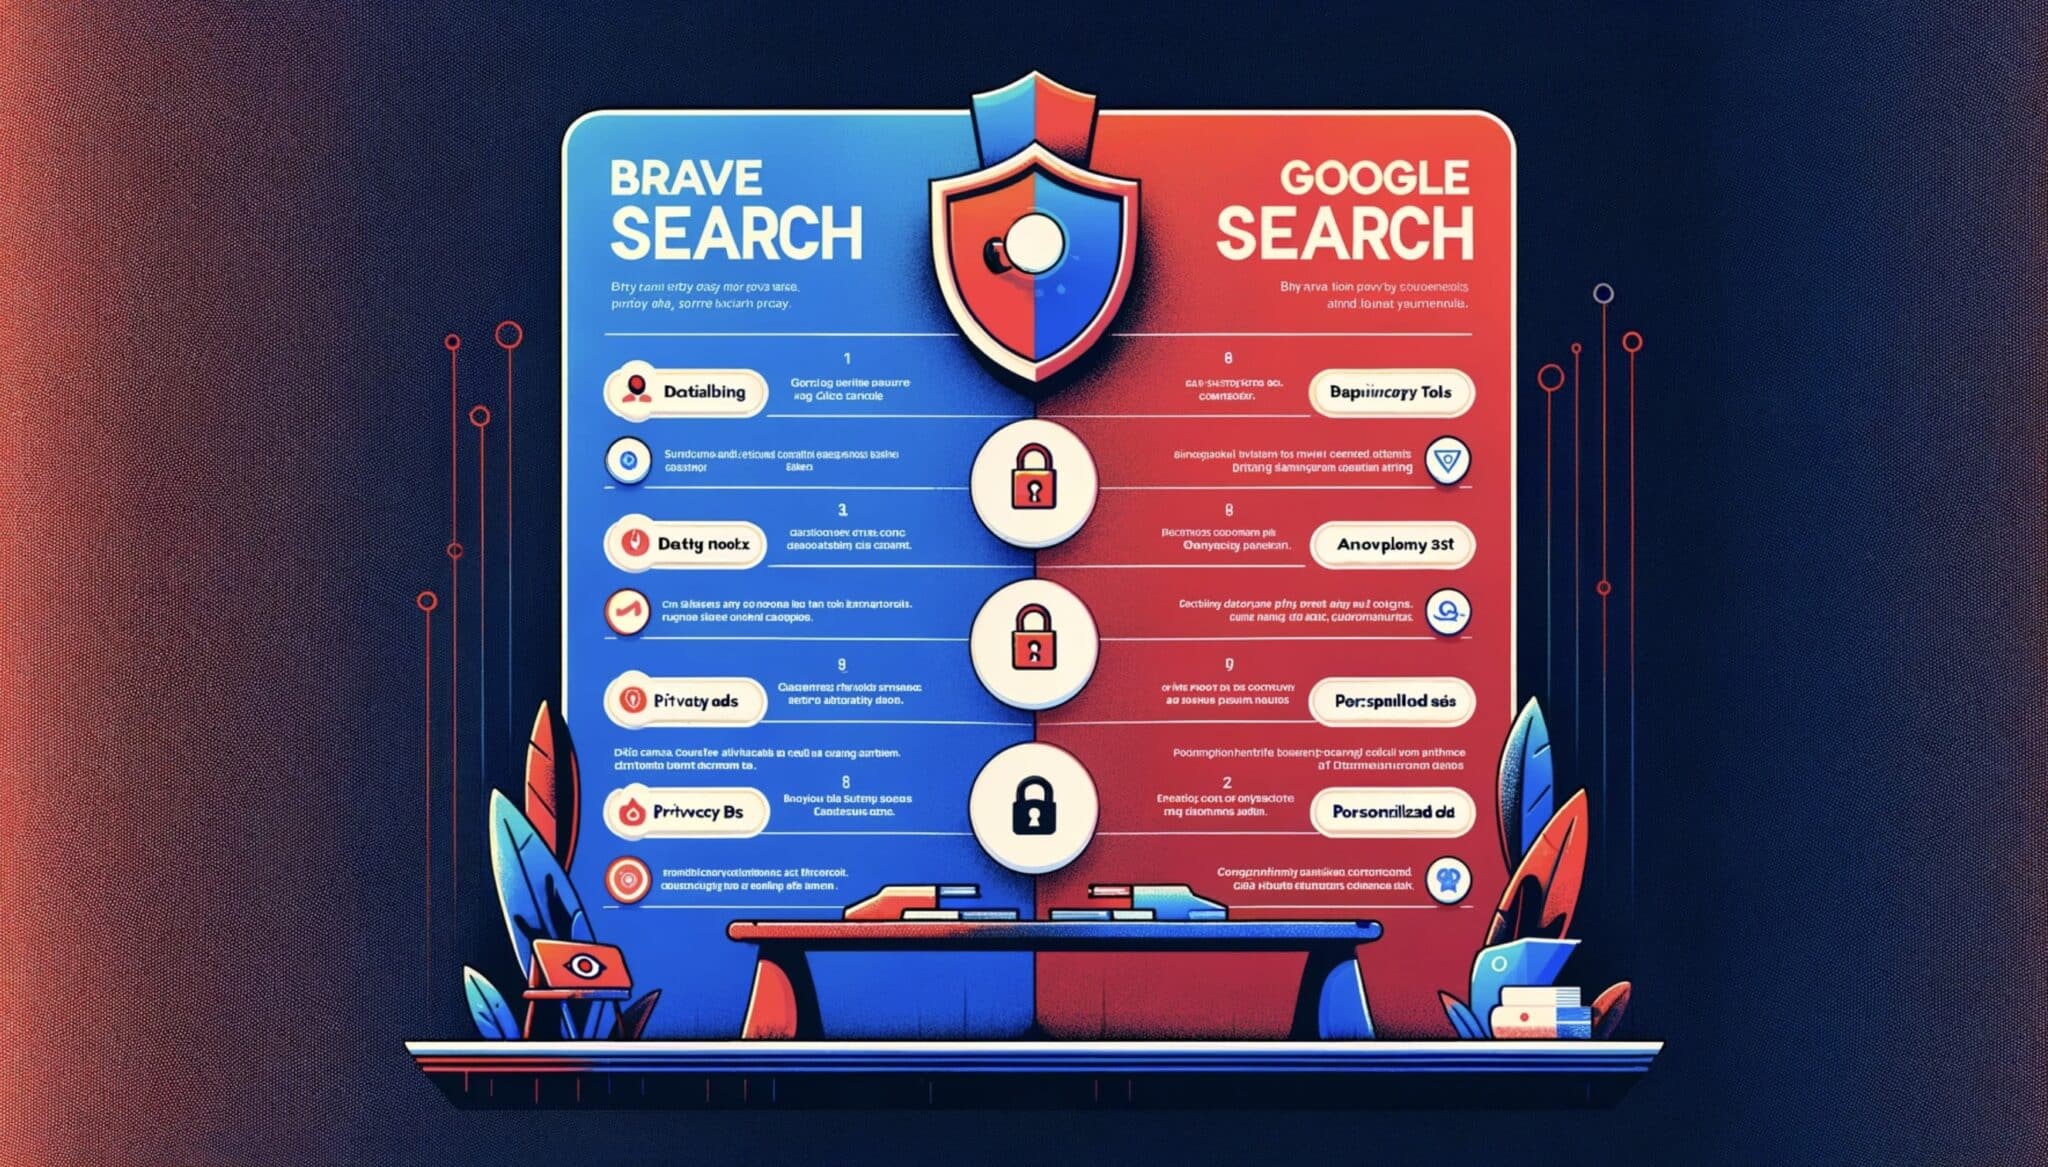 Como o Brave Search se compara ao Google na proteção de dados pessoais?